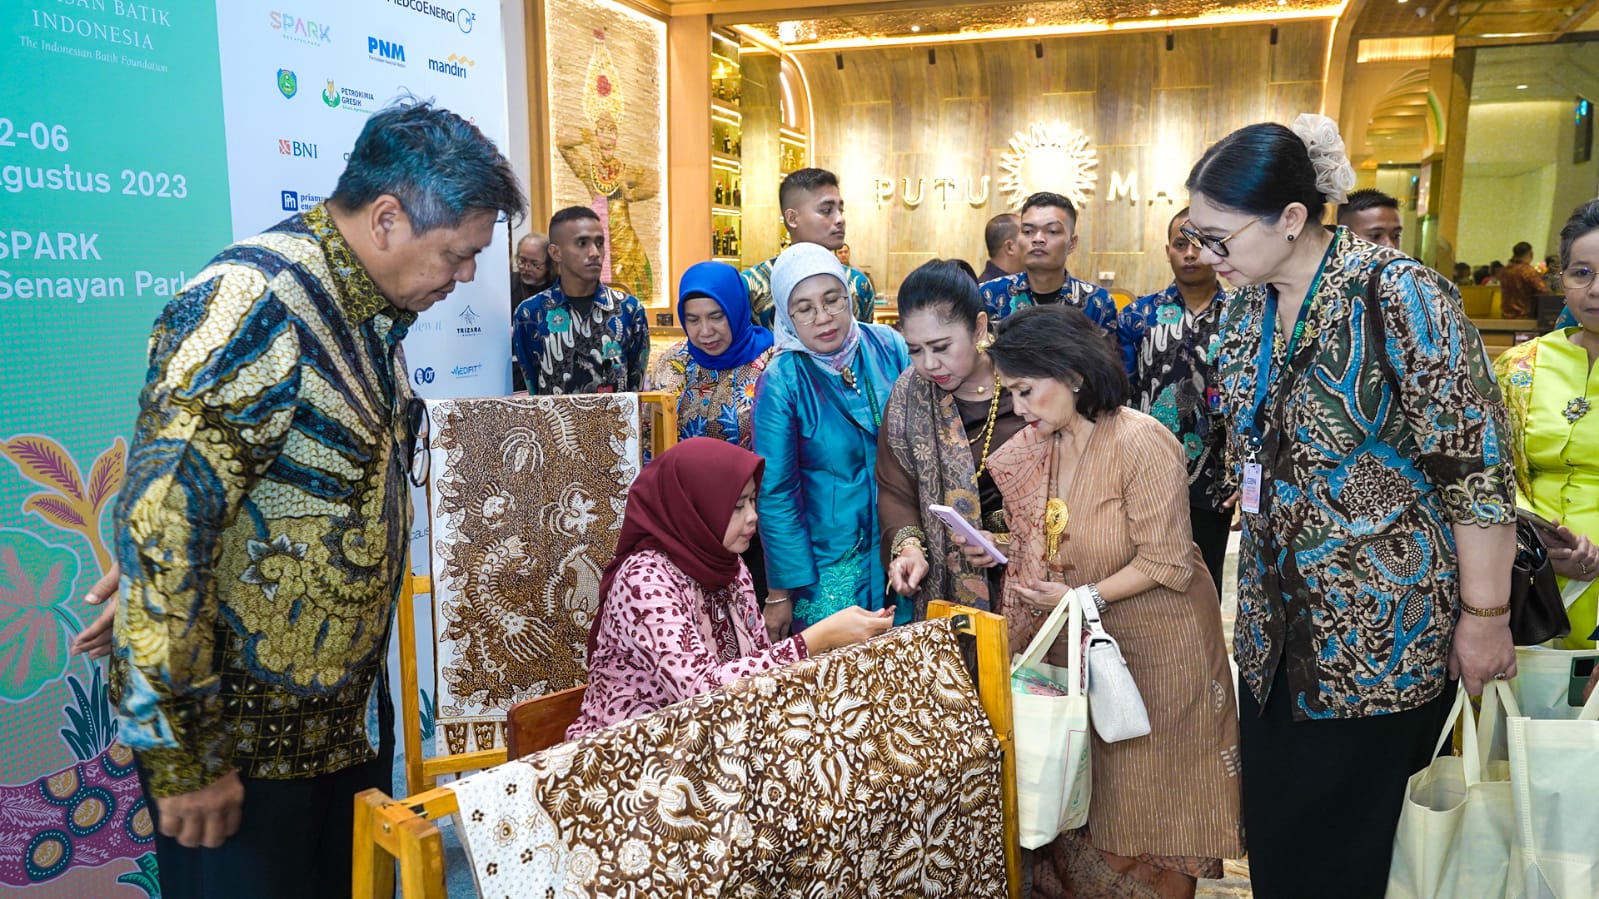 Perhelatan GBN 2023 dibuka langsung oleh Presiden Joko Widodo didampingi Ibu Negara Iriana Joko Widodo.